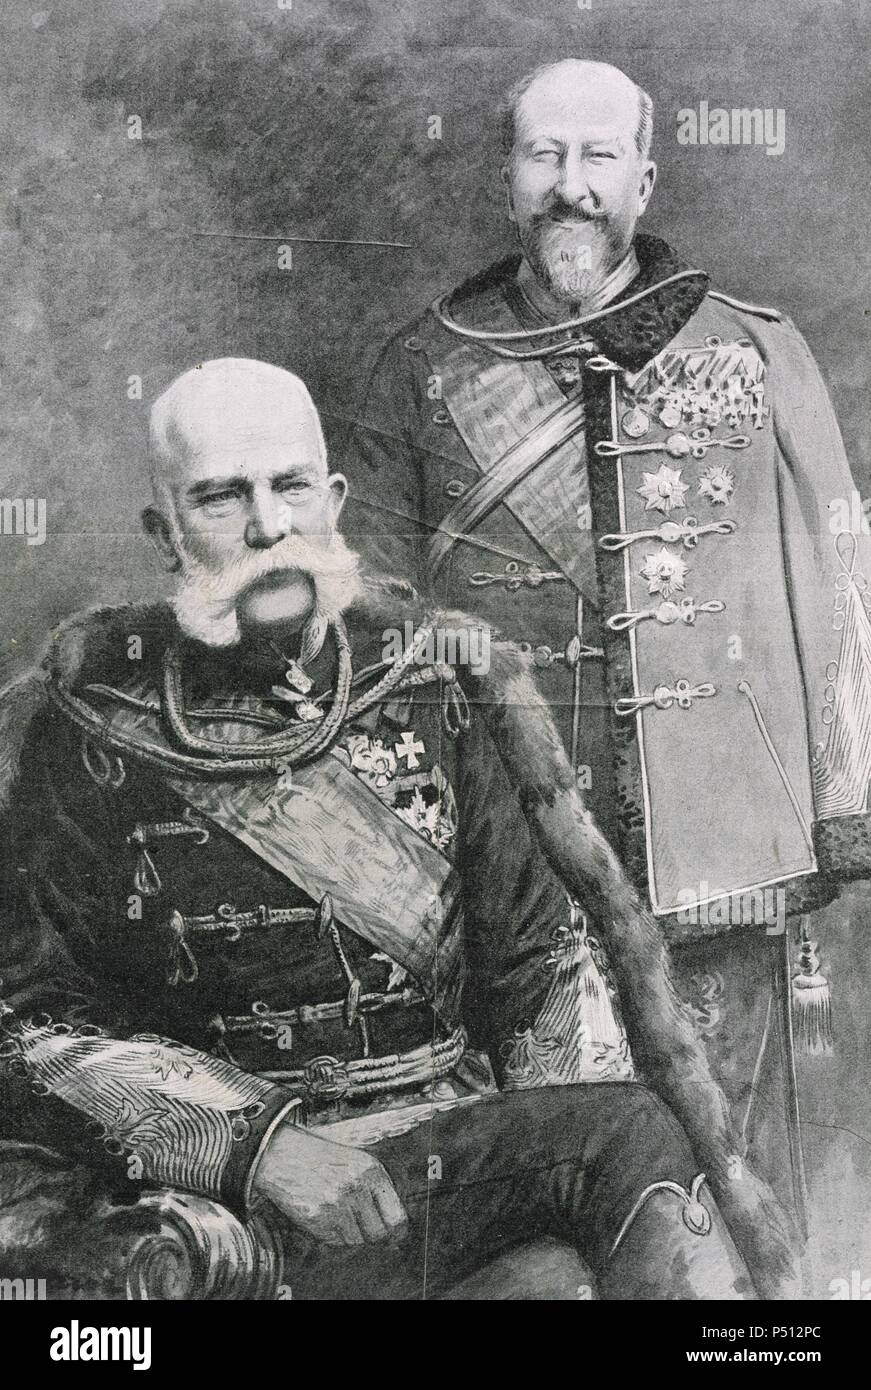 Franz Joseph I of Austria (1830-1916). Emperor of Austria and King of Hungary and Ferdinand I of Austria (1861-1948).  Emperor of Austria. Photograph, 1908. Stock Photo